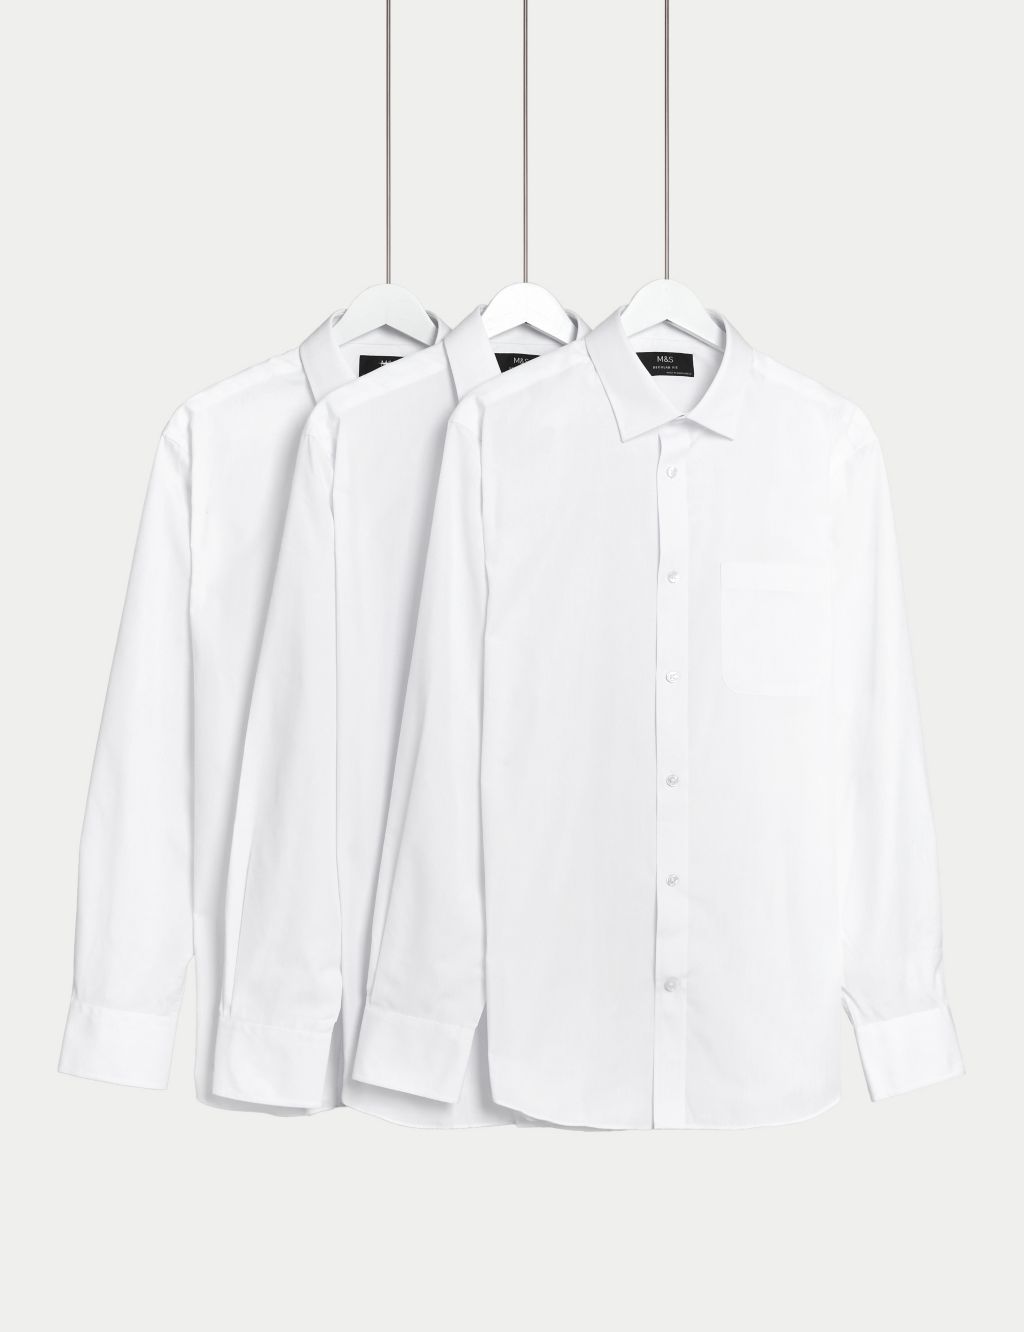 Men's White Shirts